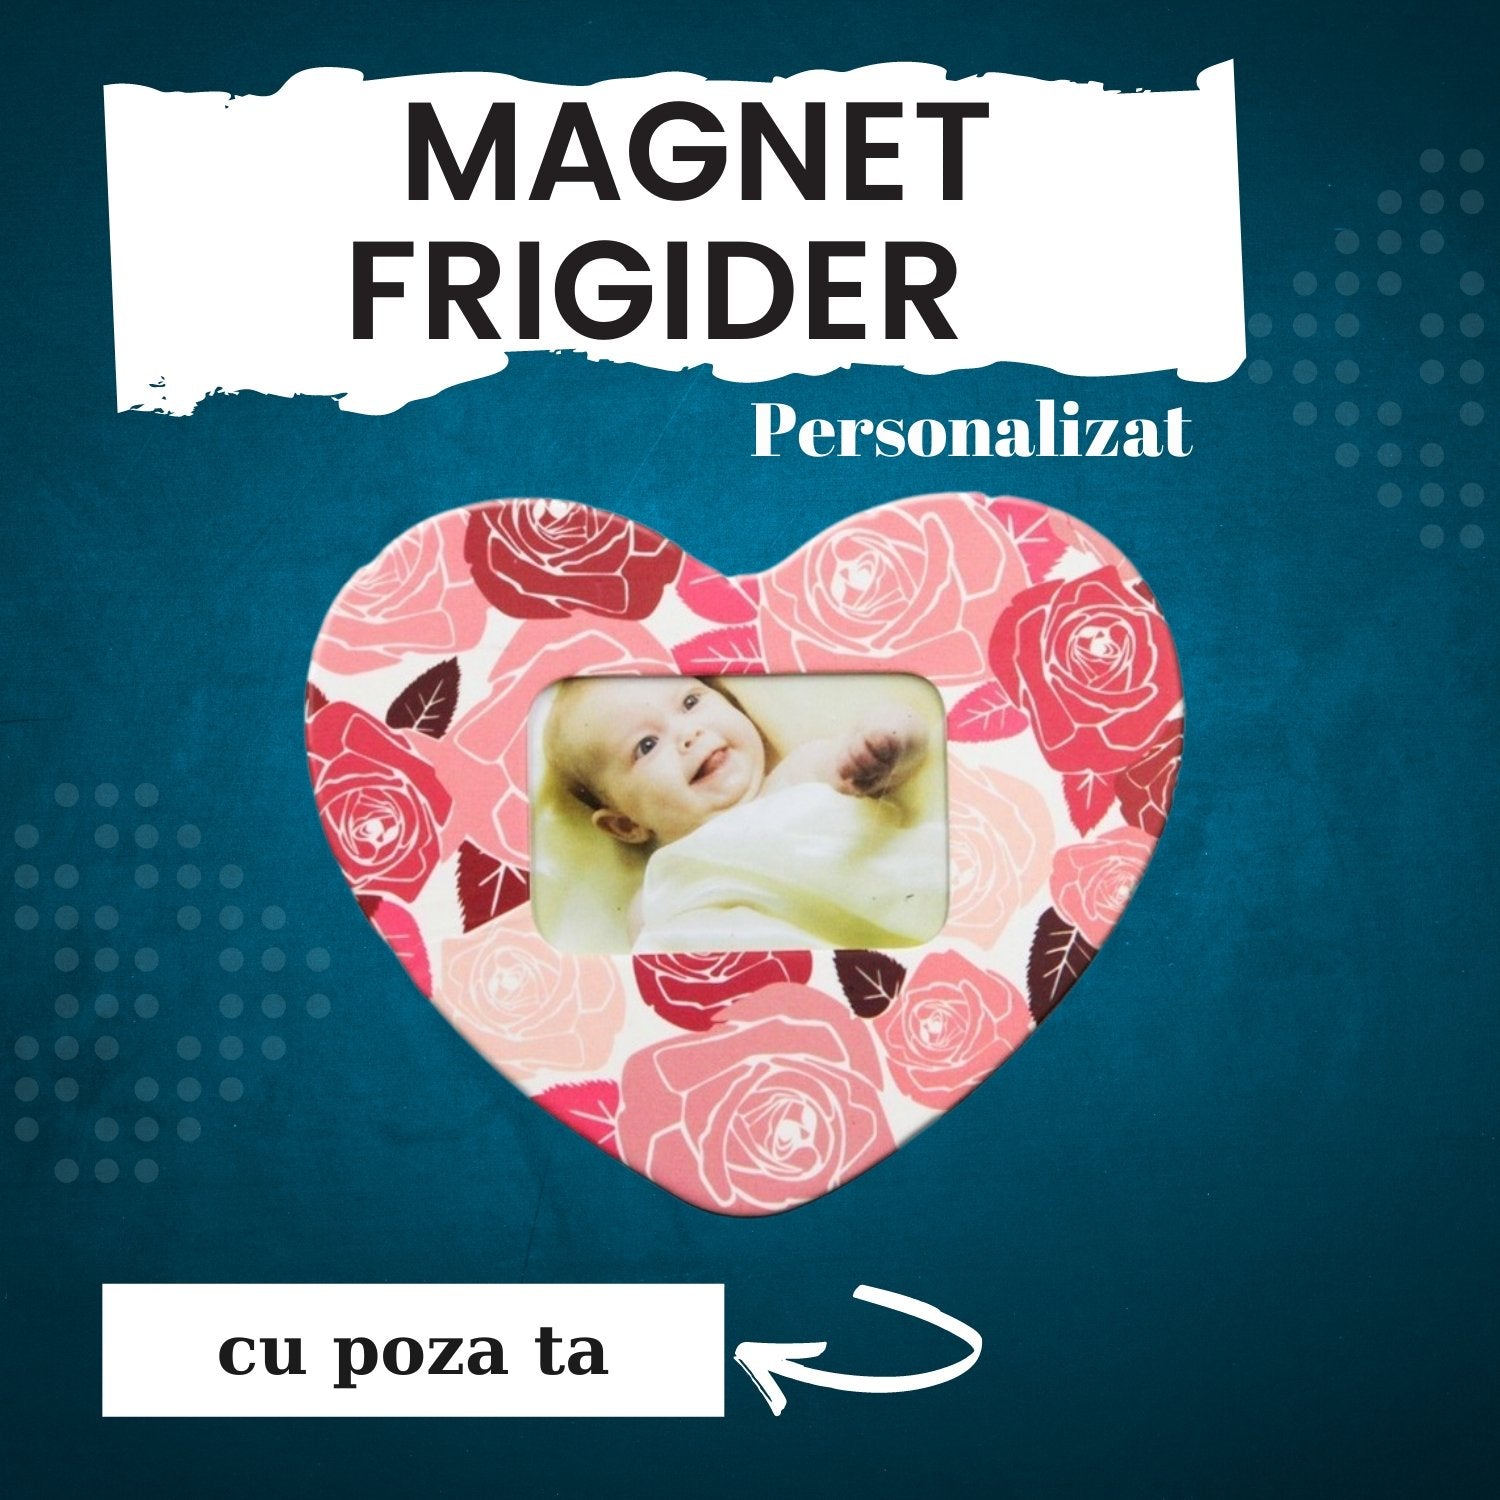 Magnet frigider inserție foto - Cadouri Personalizate 